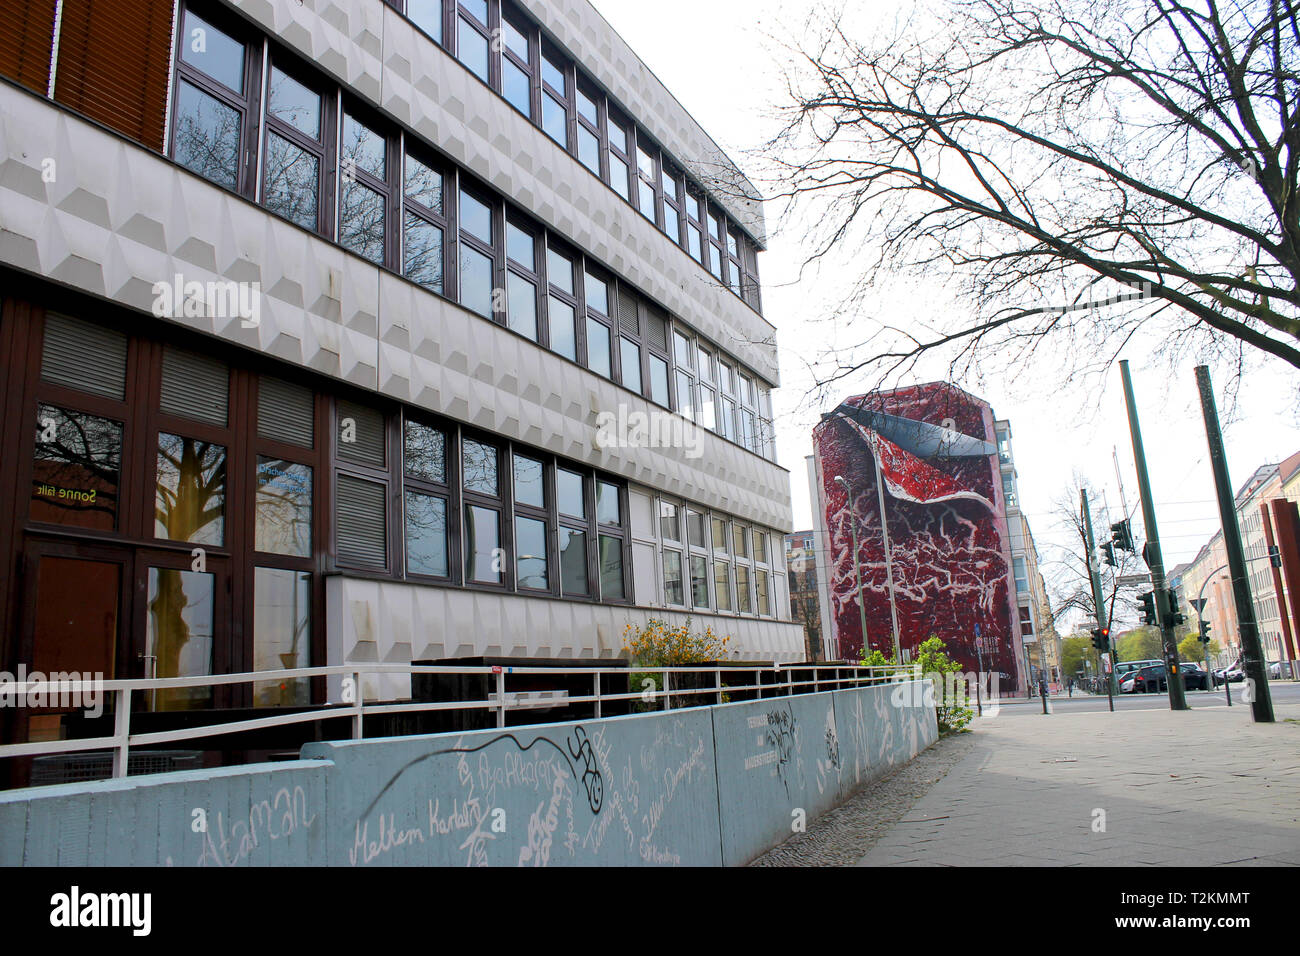 Berlin architecture-building and grafitti Stock Photo